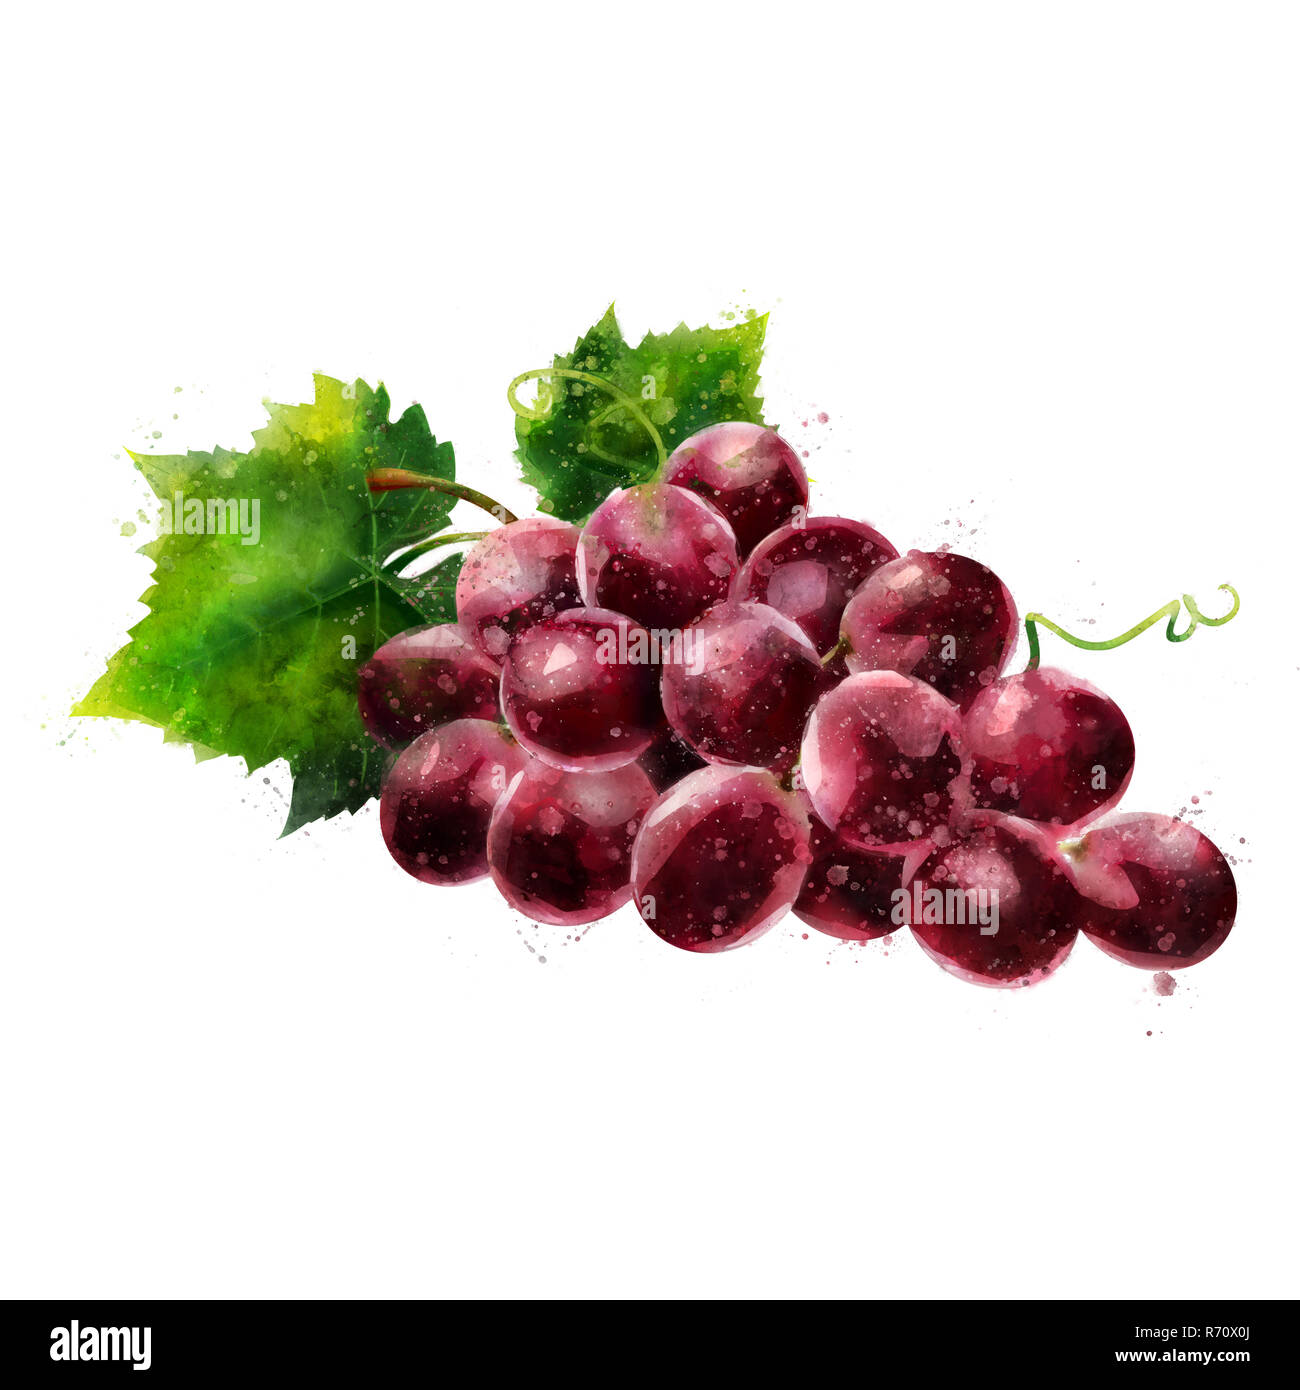 Les raisins rouges sur fond blanc. Illustration à l'aquarelle Banque D'Images